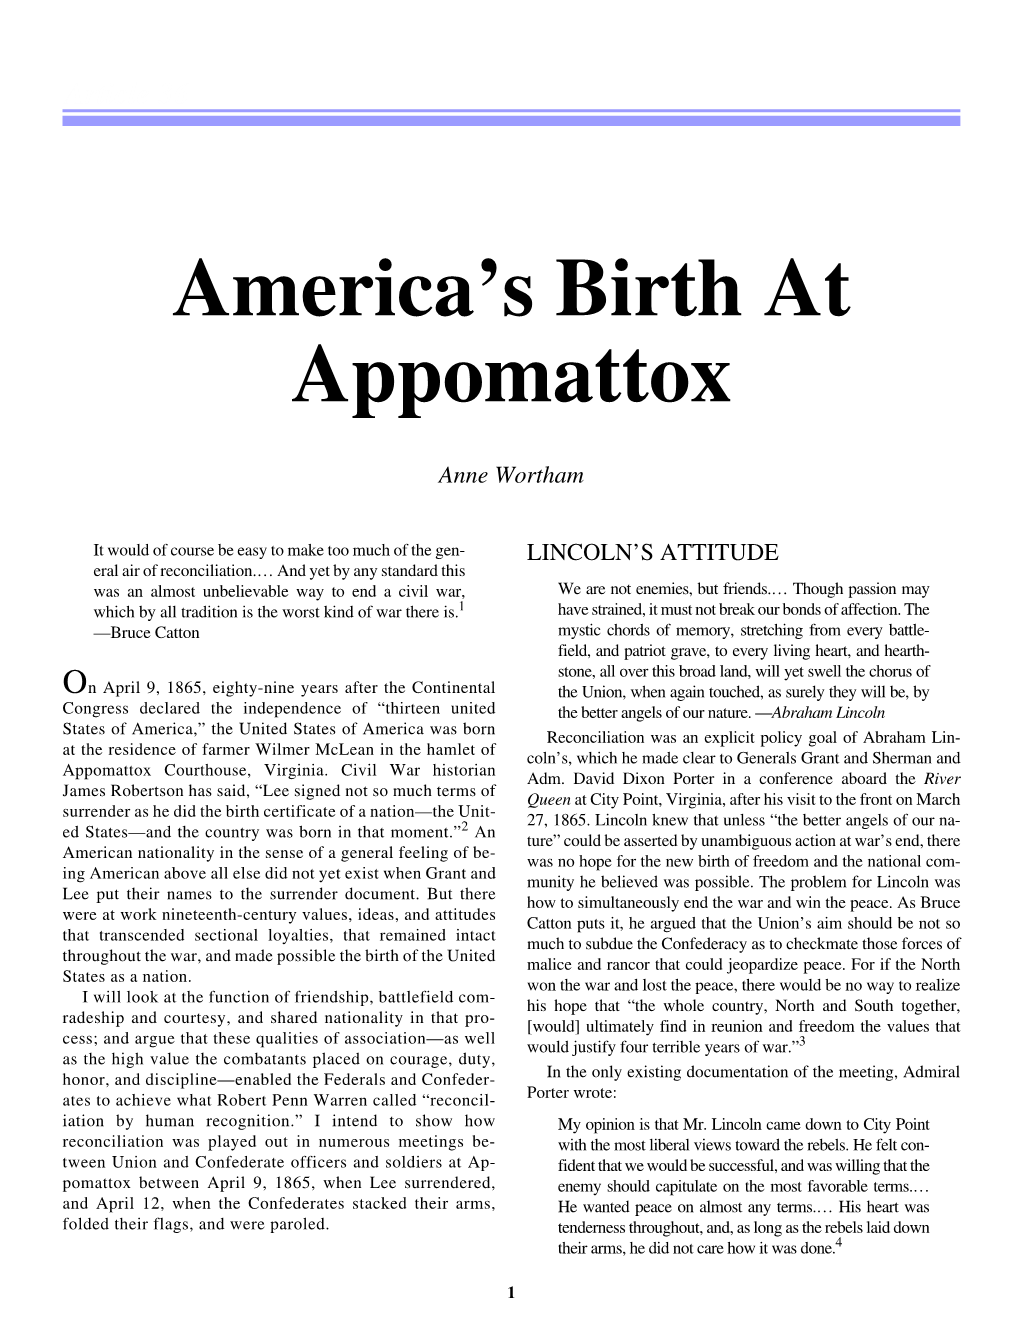 America's Birth at Appomattox